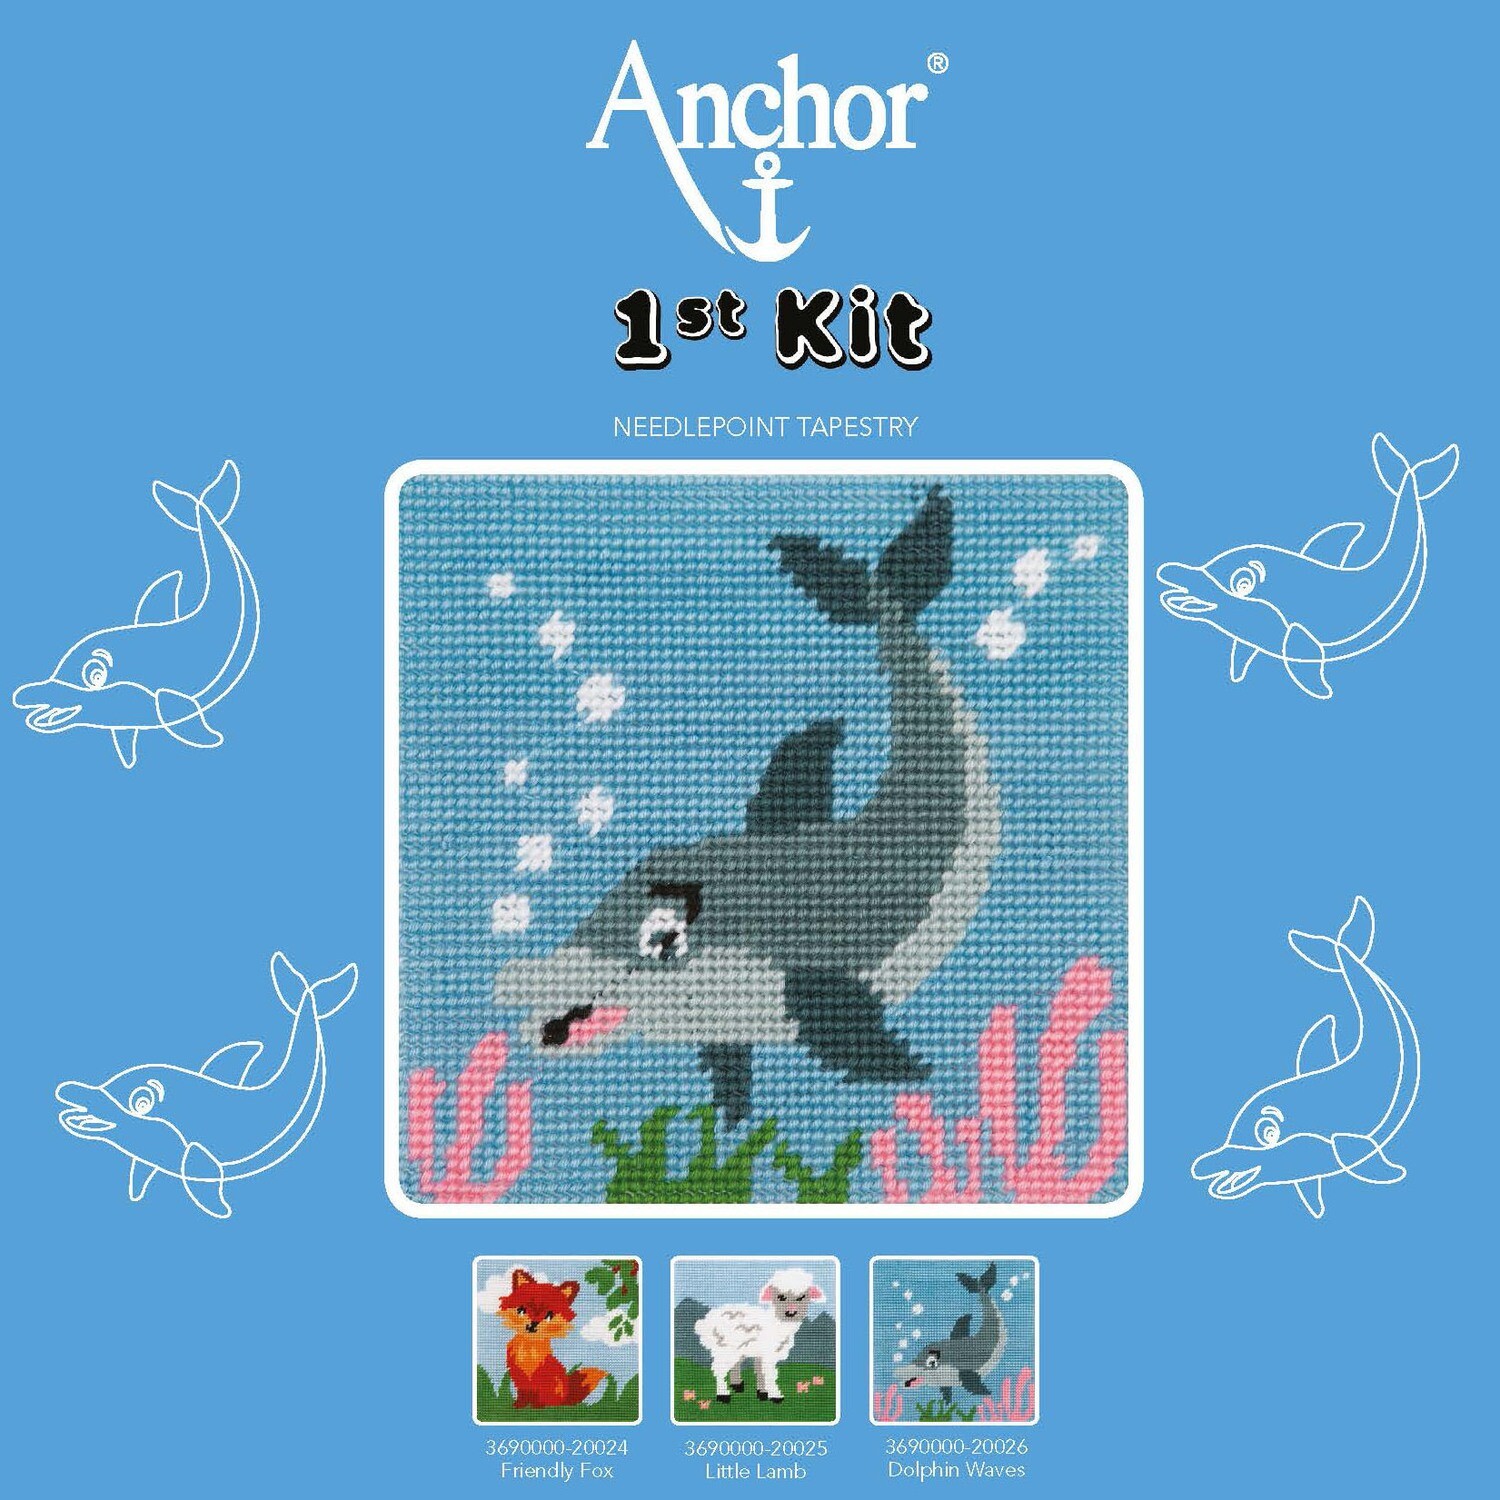 Anchor '1st Kit' gobelin hímzőkészlet gyerekeknek. Delfin 20026